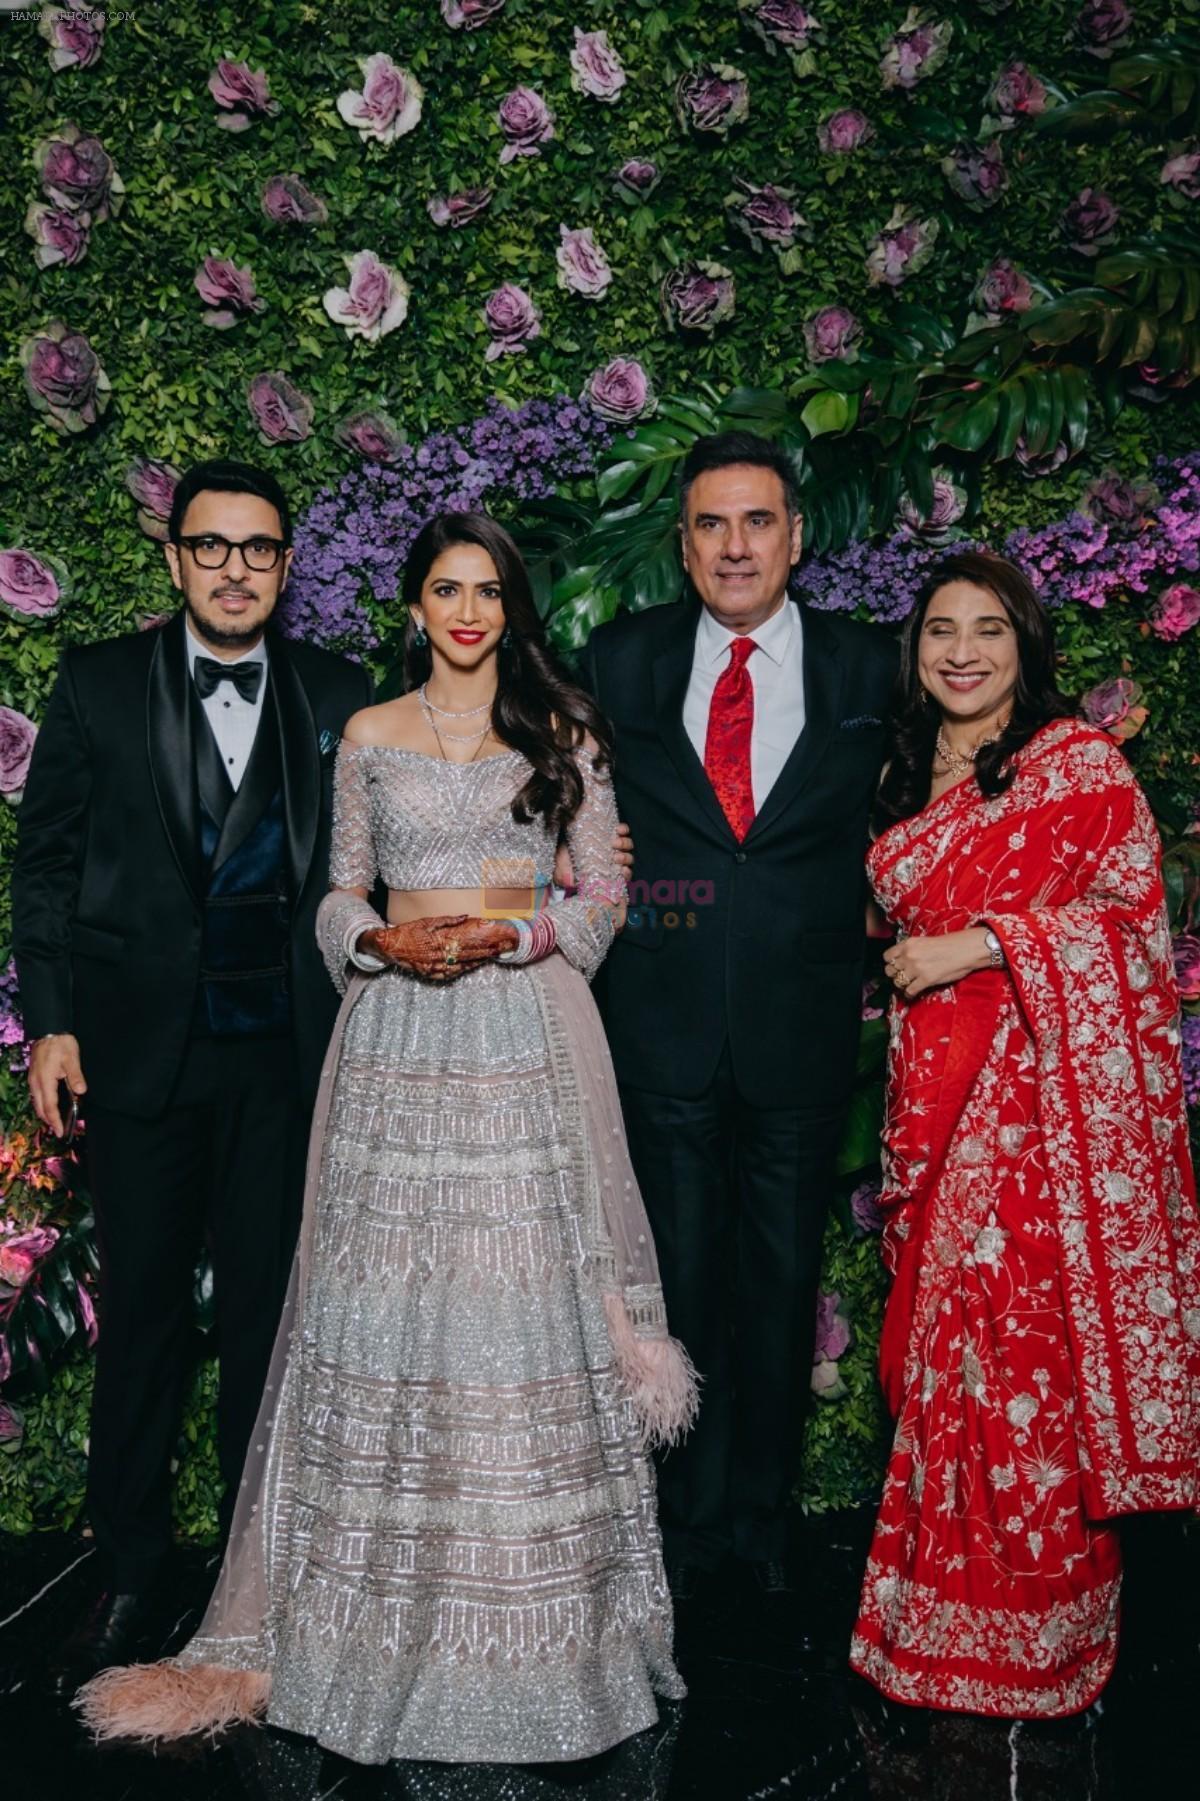 Dinesh Vijan and Pramita Tanwar's wedding reception in jw marriott juhu on 15th Dec 2018